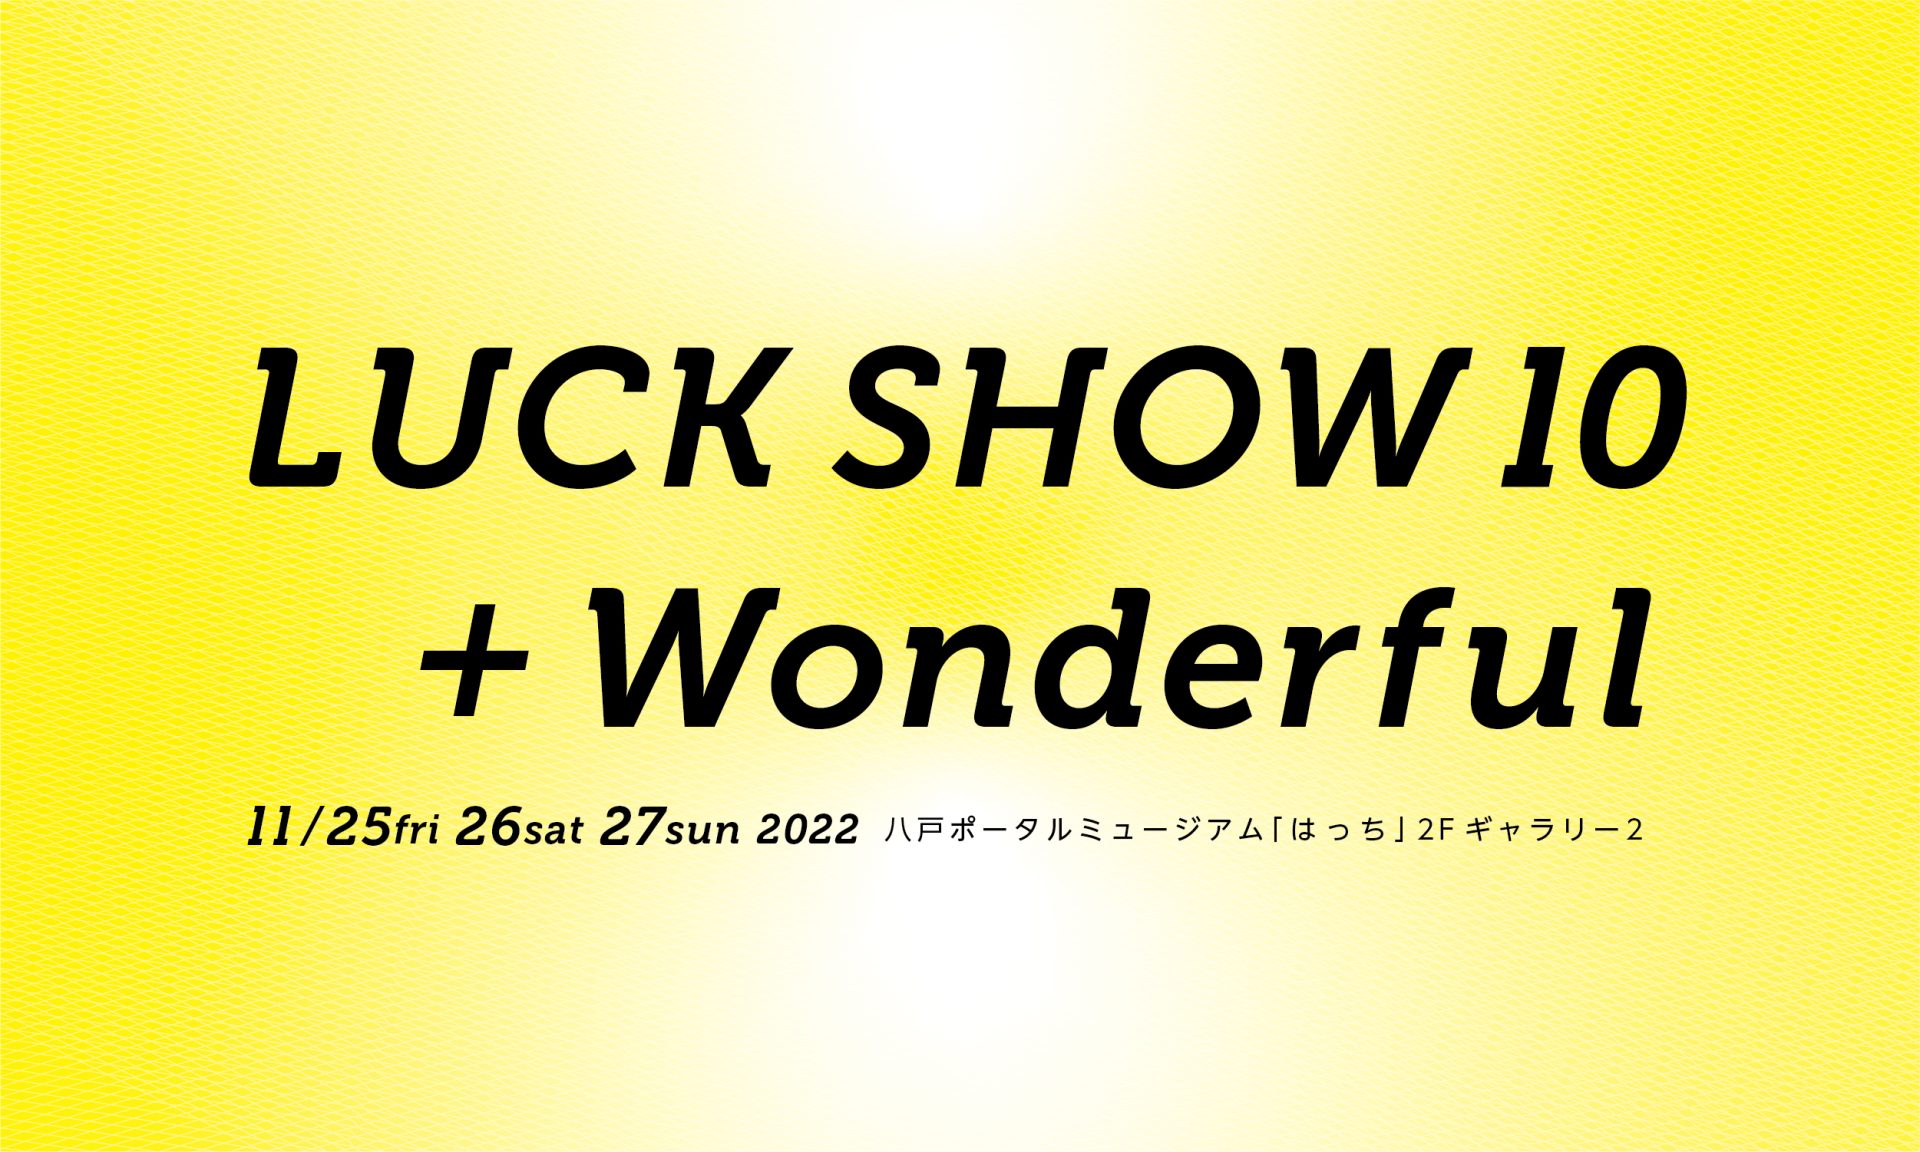 ［ デザイン ア テンション ! ］「LUCK SHOW」の10年間＋1年を紹介するデザイン展『 LUCK SHOW 10 + Wonderful 』を11月25日から「はっち／八戸市」にて開催します。